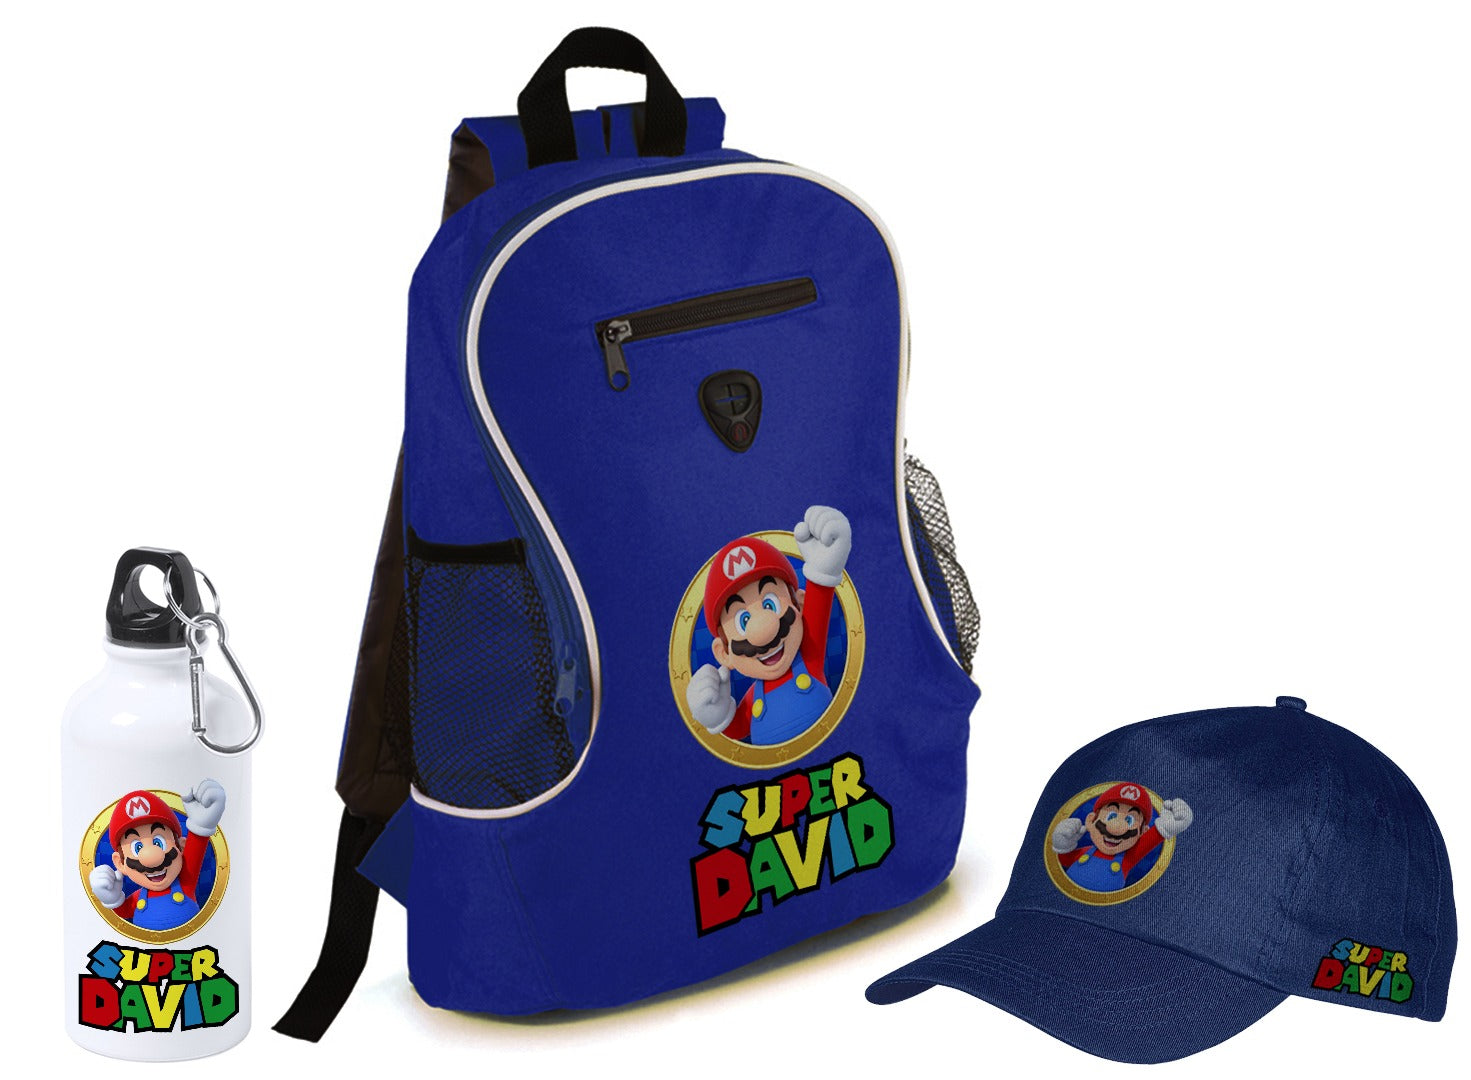 Gorras, botellas y mochilas personalizadas